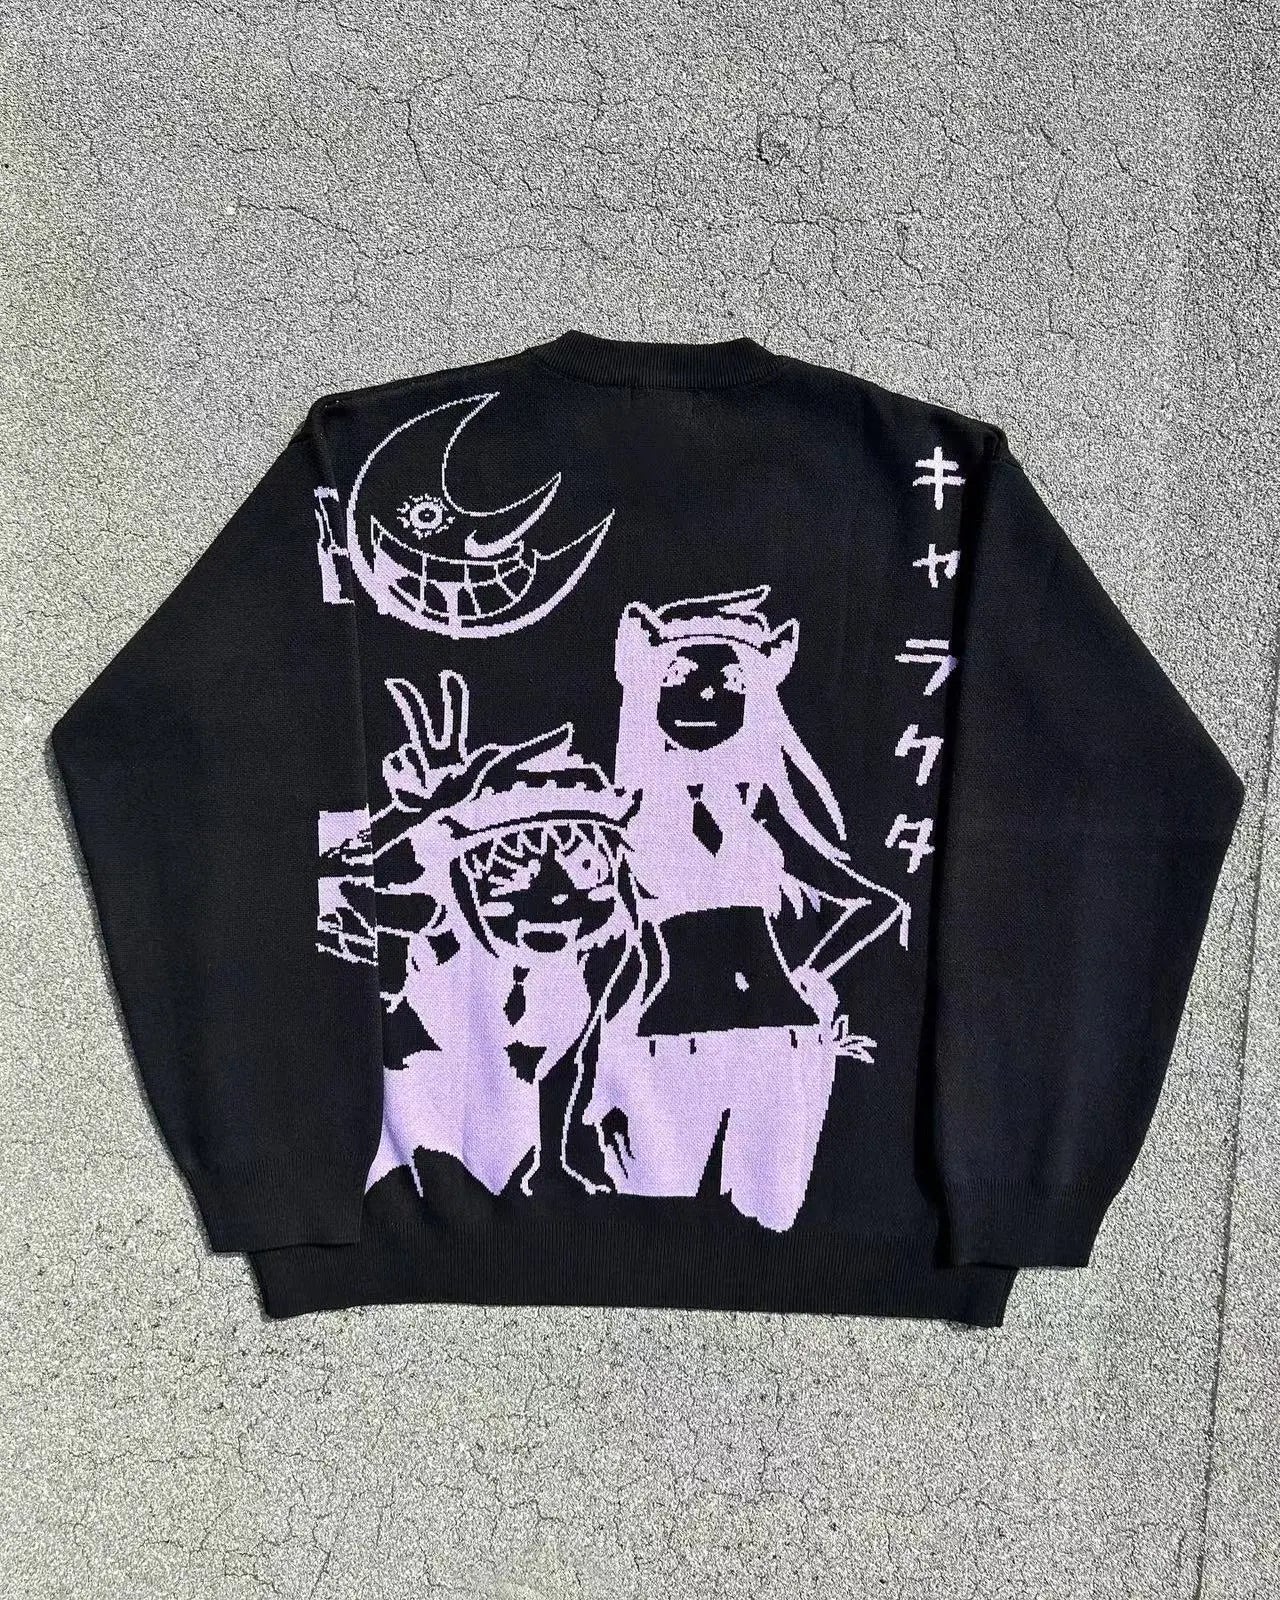 Soul Eater Anime Sweater Black